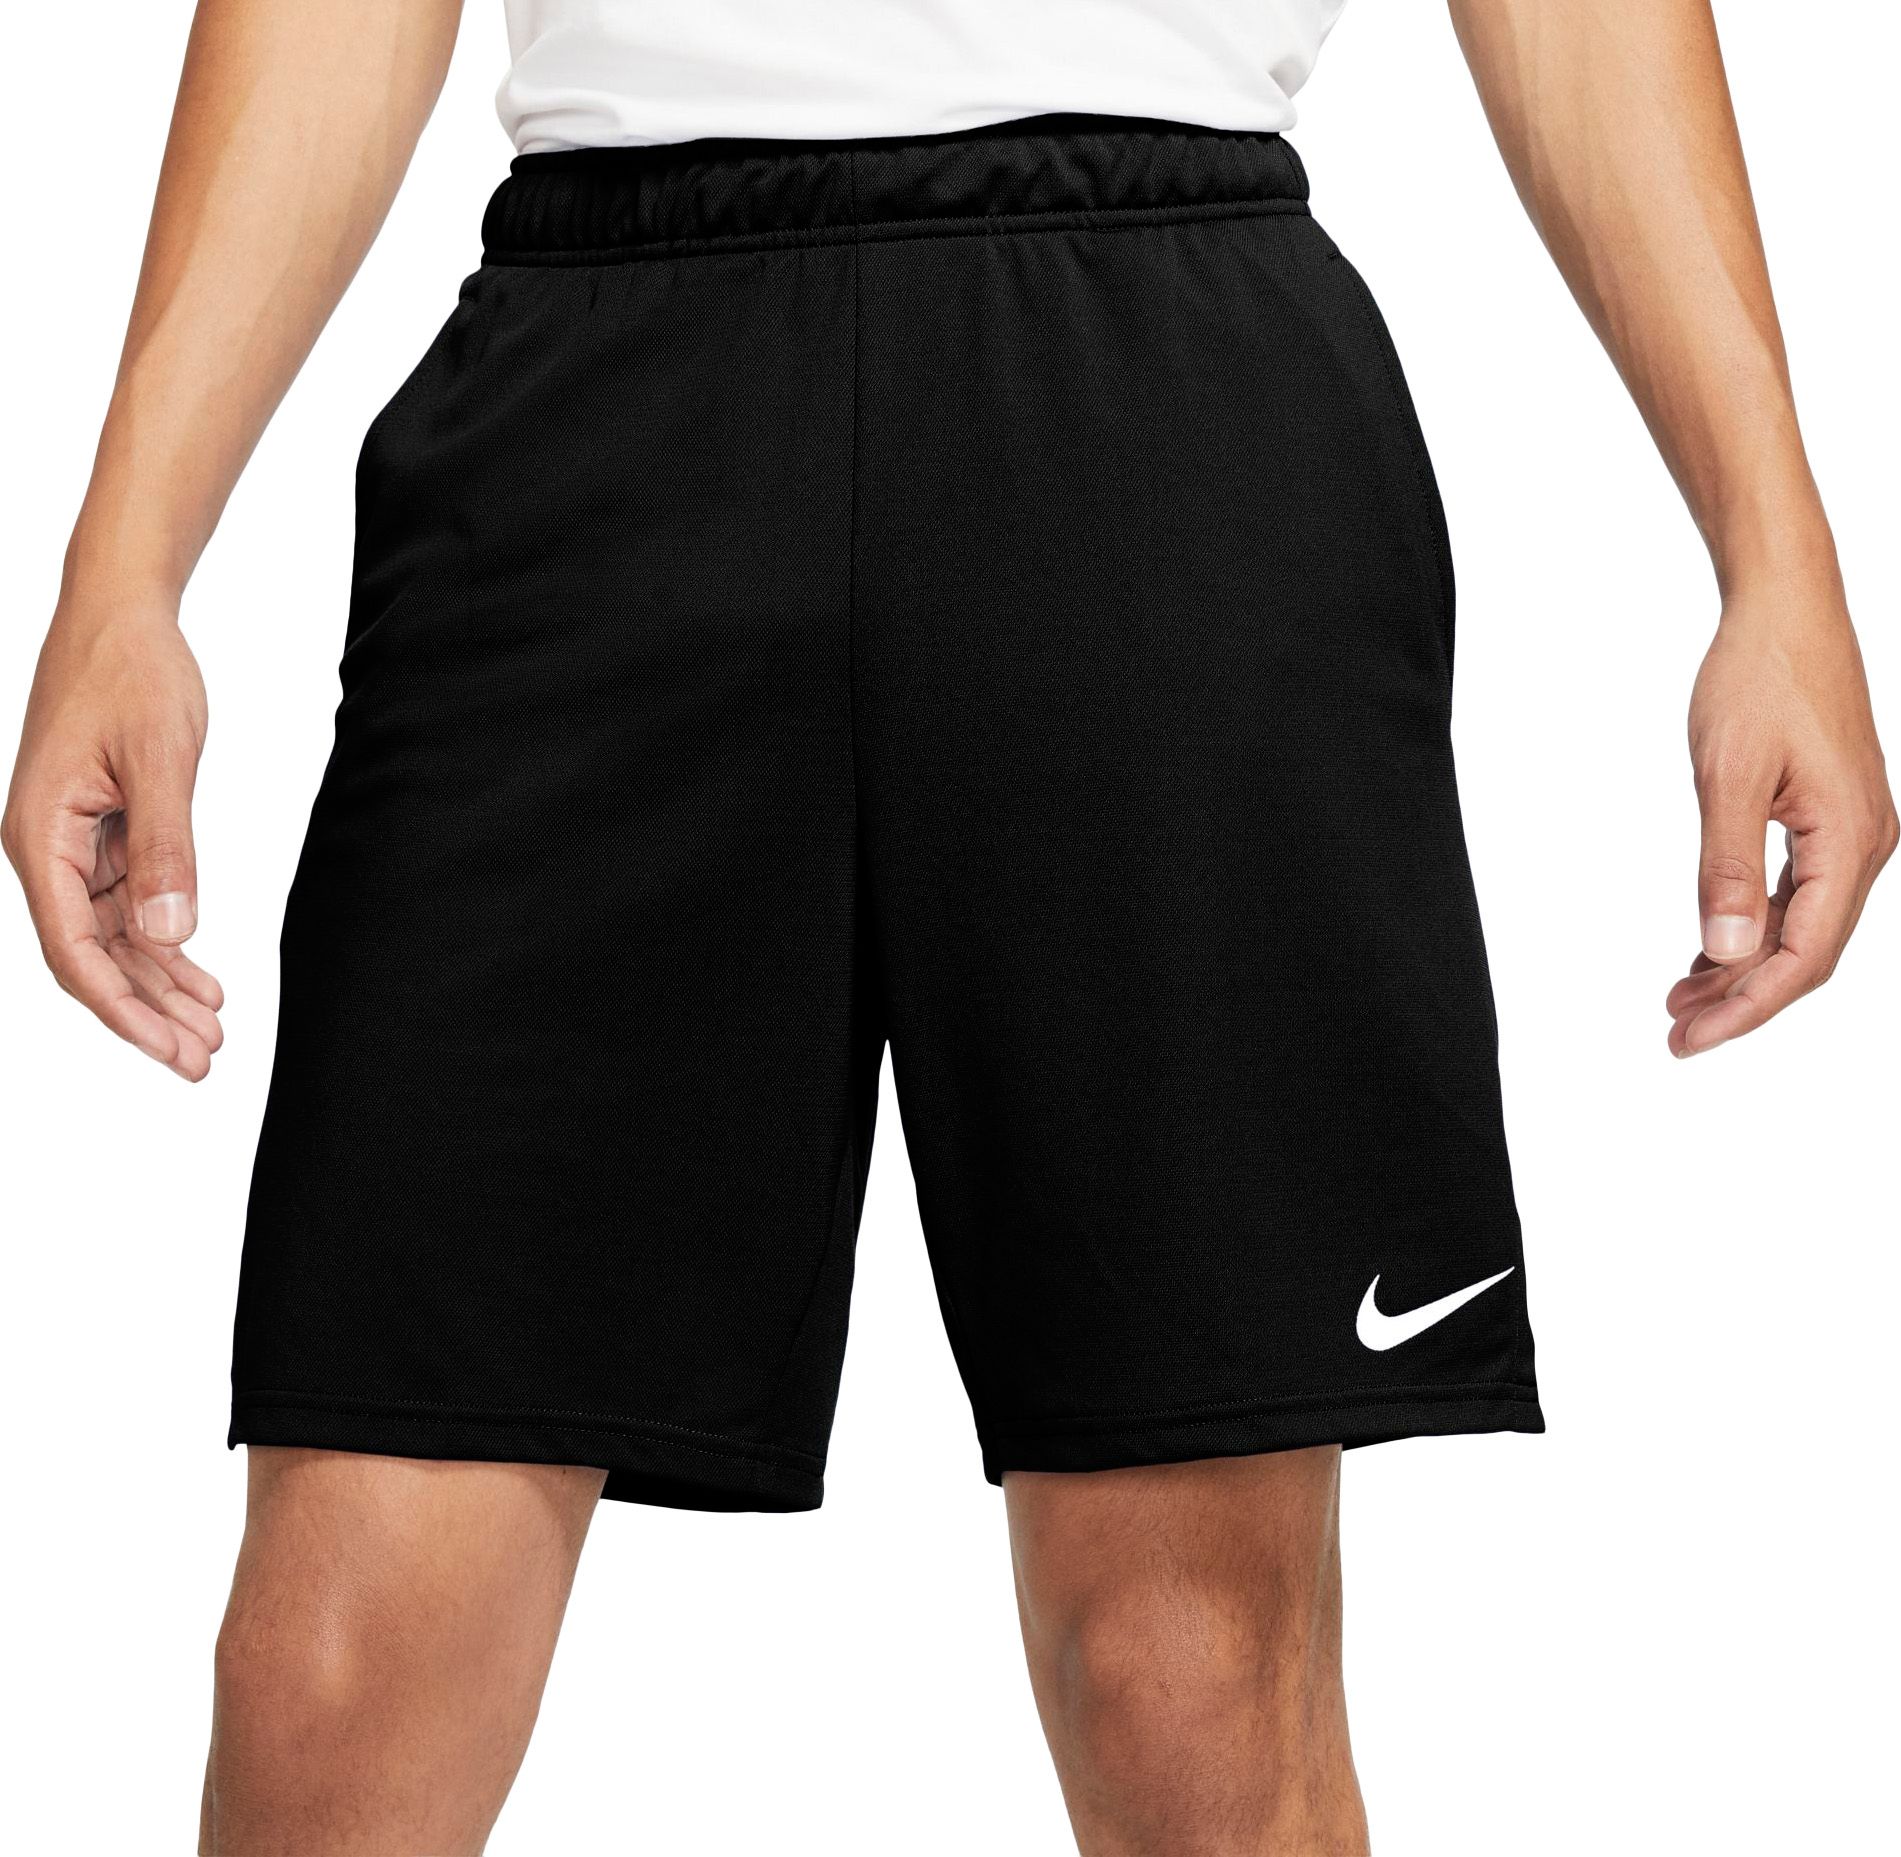 nike men's dry epic training shorts